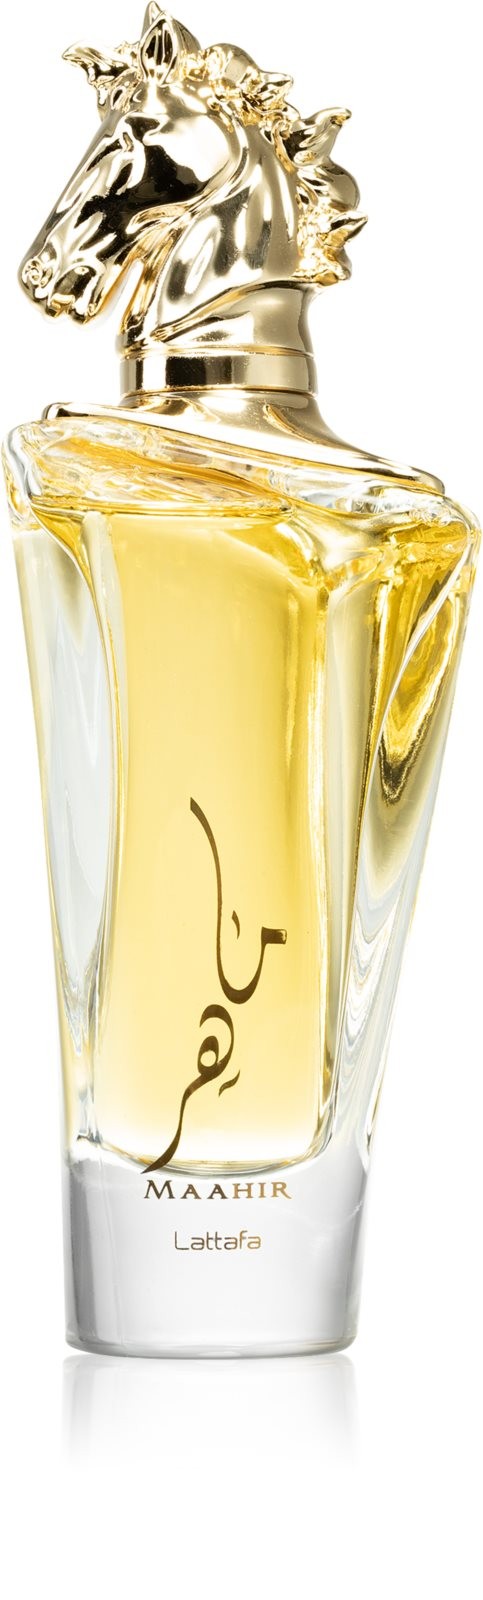 Maahir -Lattafa parfumspray - Lattafa